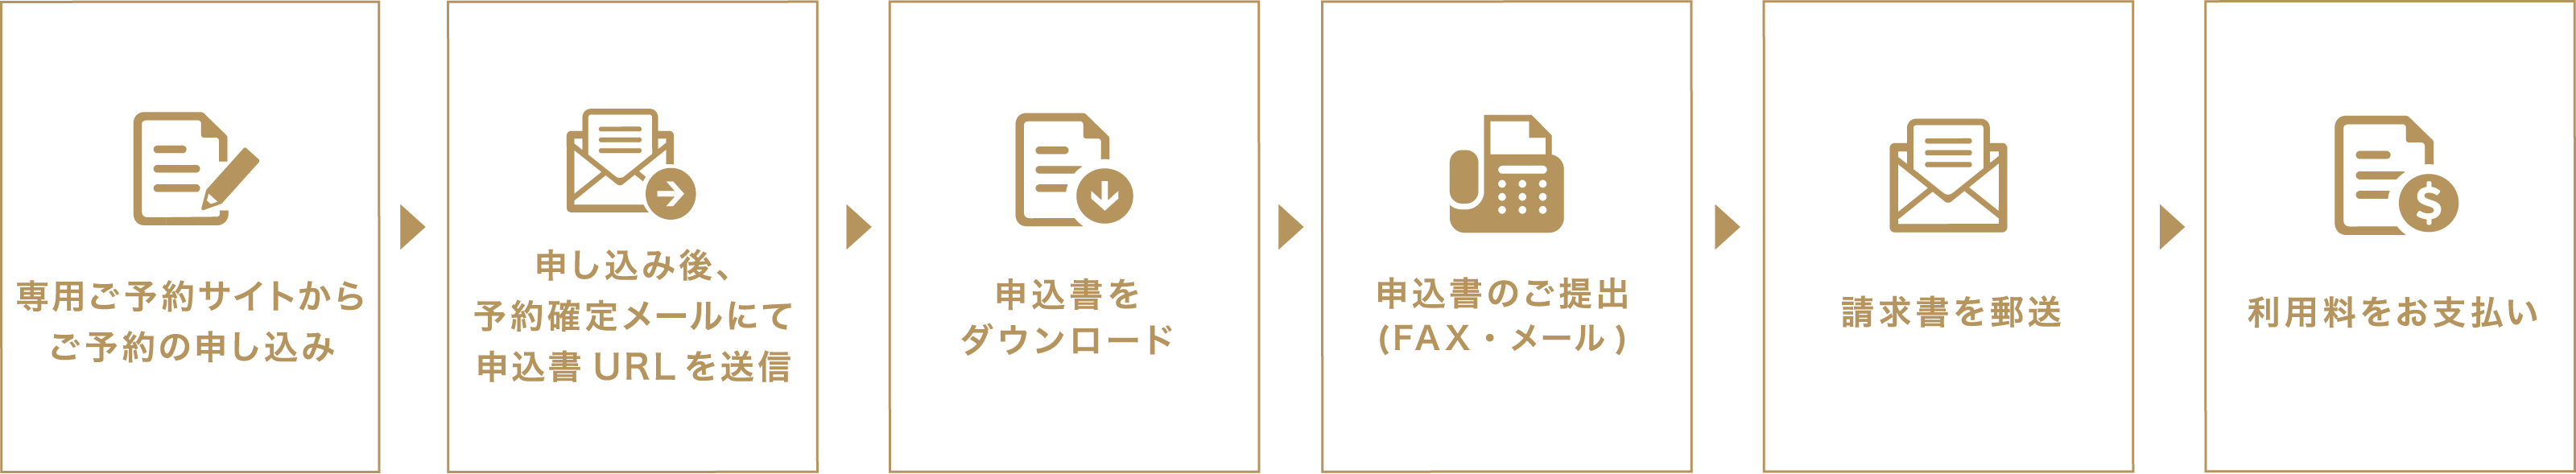 空室確認→メールフォームか電話で仮予約→申込書の提出→請求→支払